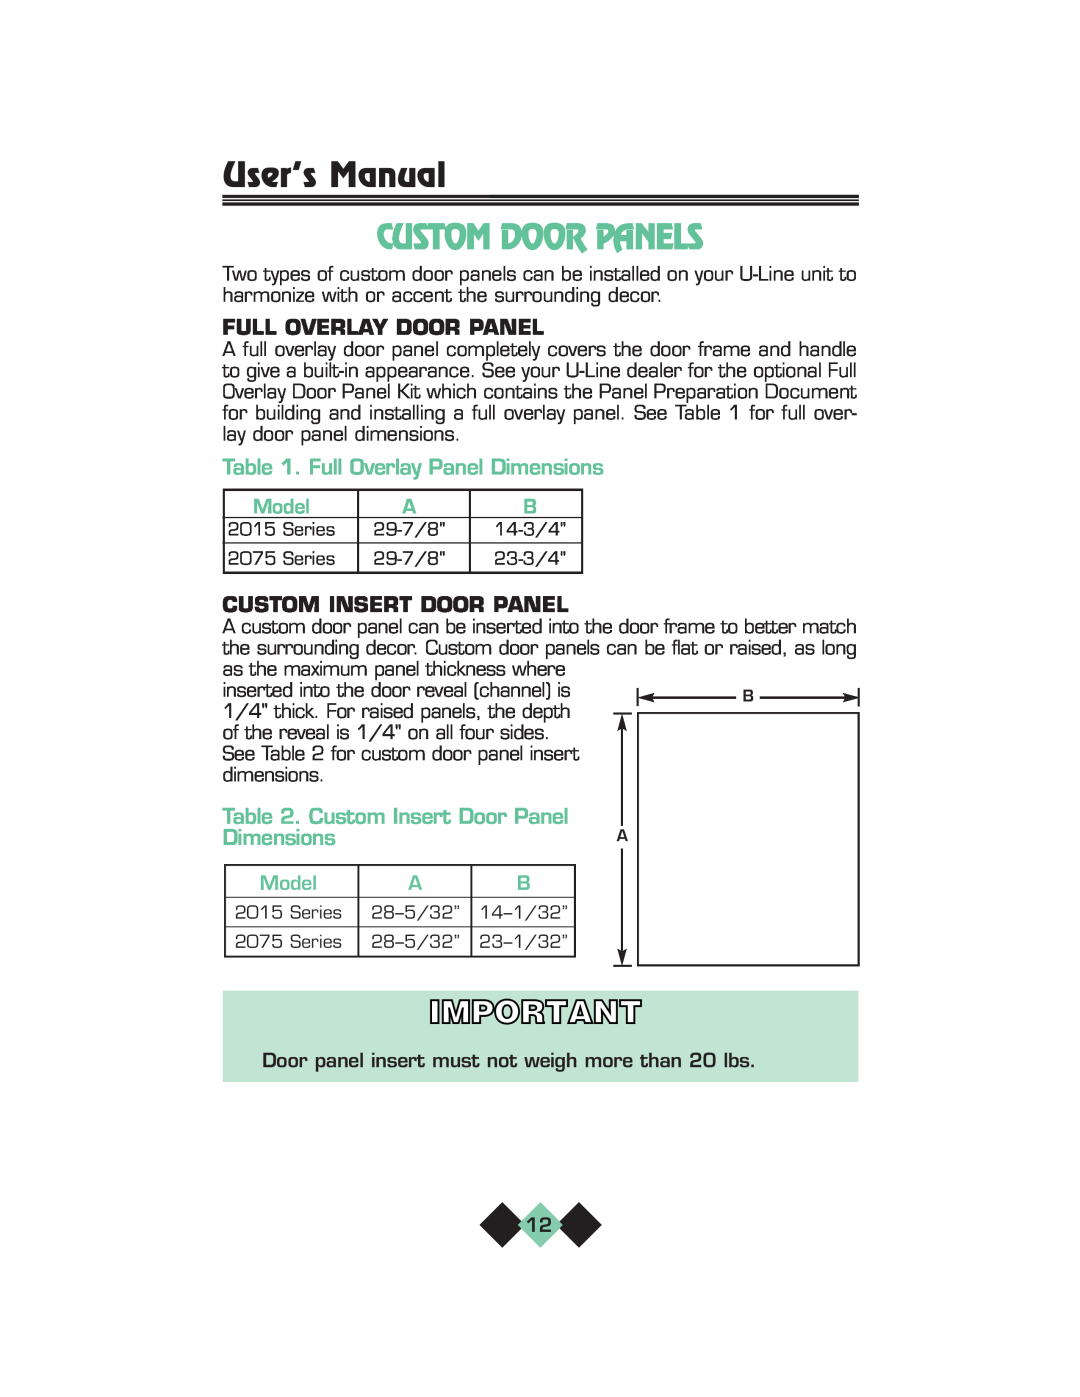 U-Line pmn Custom Door Panels, Full Overlay Door Panel, Full Overlay Panel Dimensions, Custom Insert Door Panel, Model 